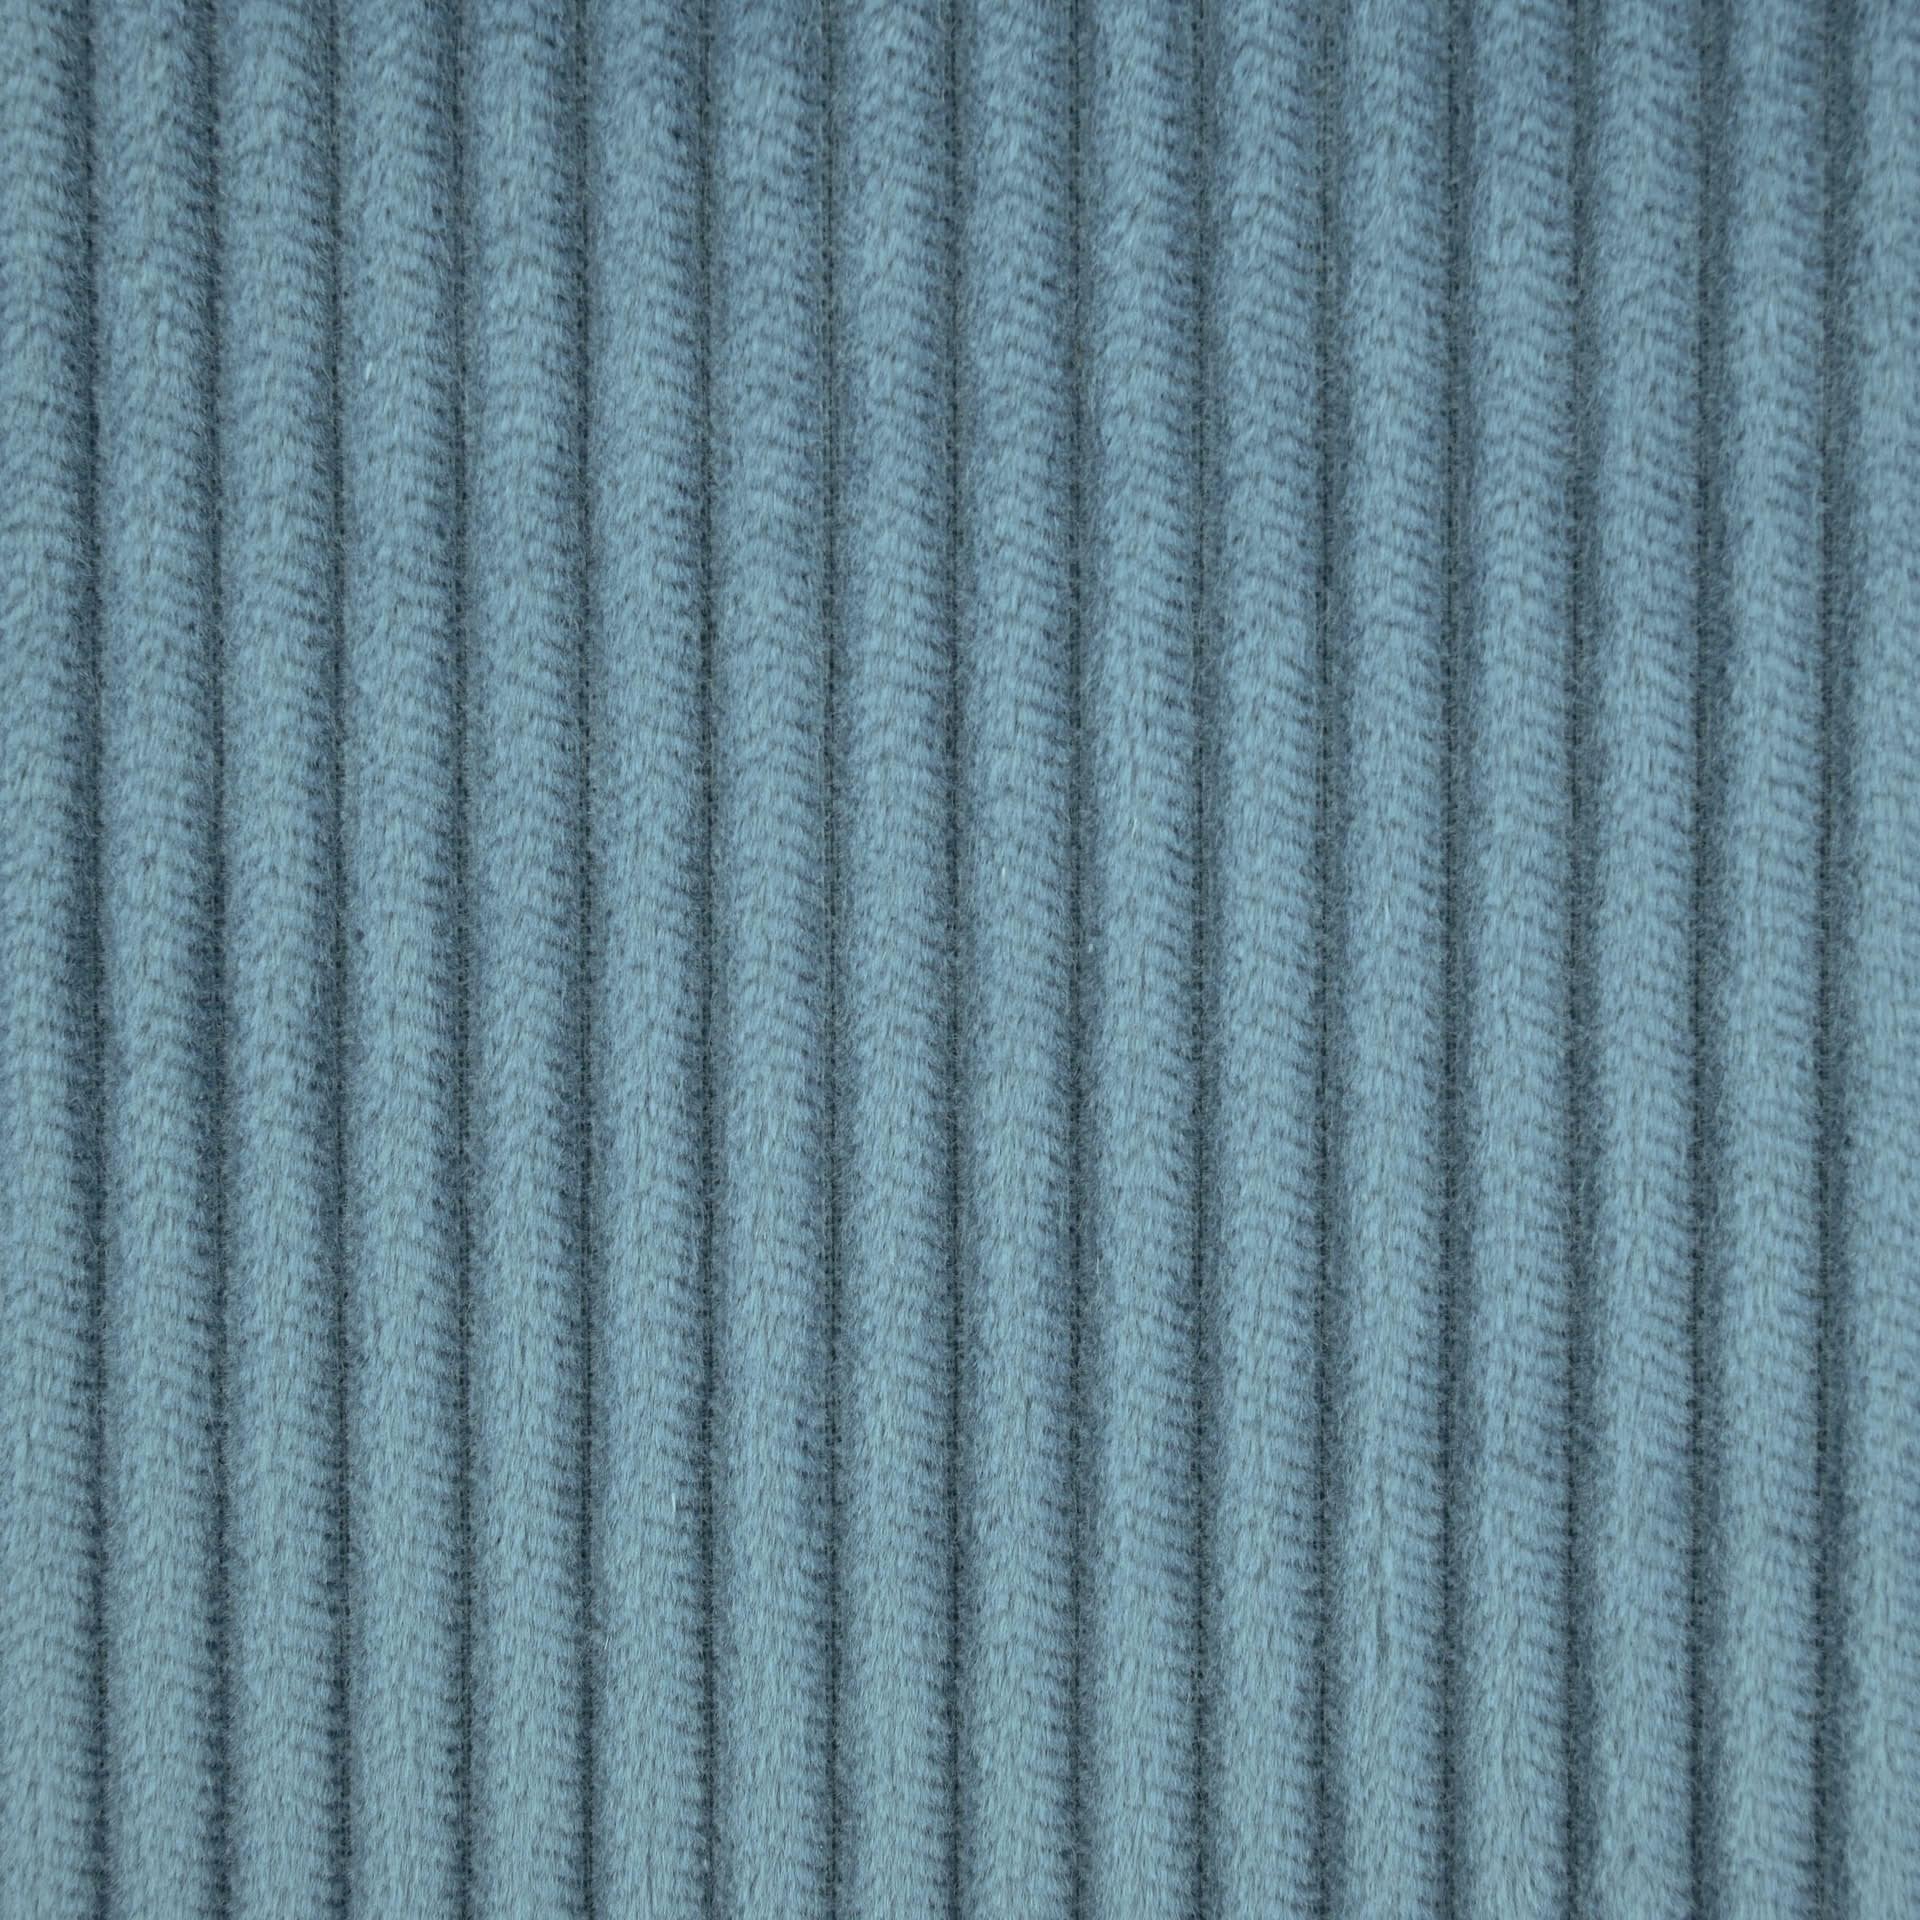 Blue Striped Velvet Fabric 4093